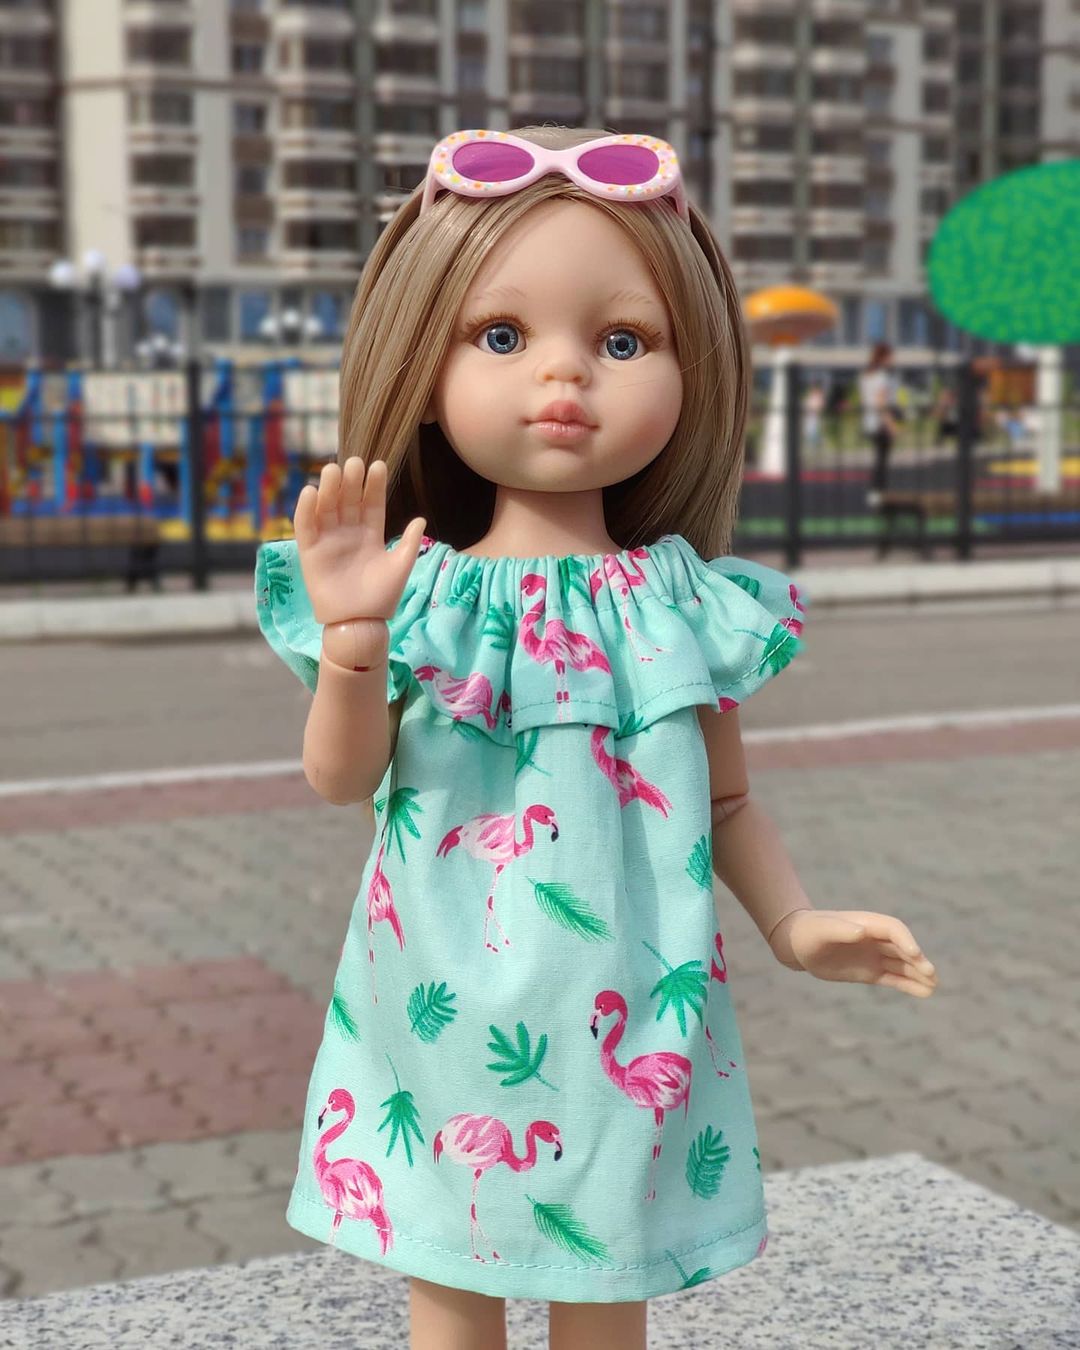 Куклы популярные сейчас. Популярные куклы для девочек 2022. Модные куклы 2022. Куклы сейчас. Самая модная кукла 2022.